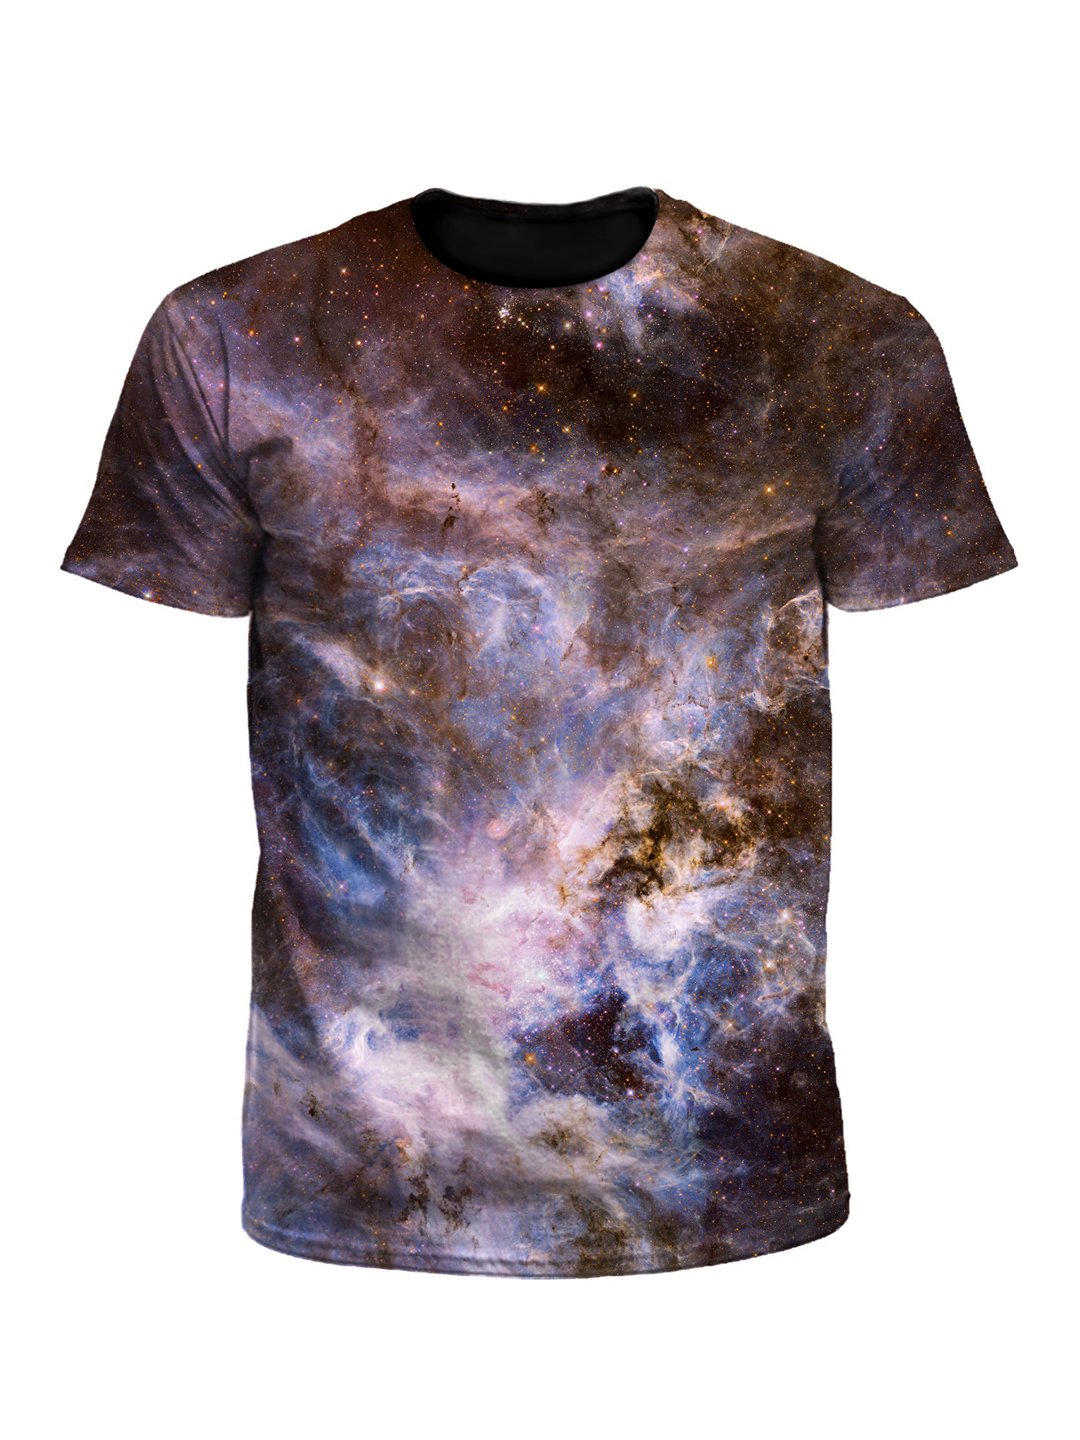 Interstellar Connection Galaxy Unisex T-Shirt - Boogie Threads